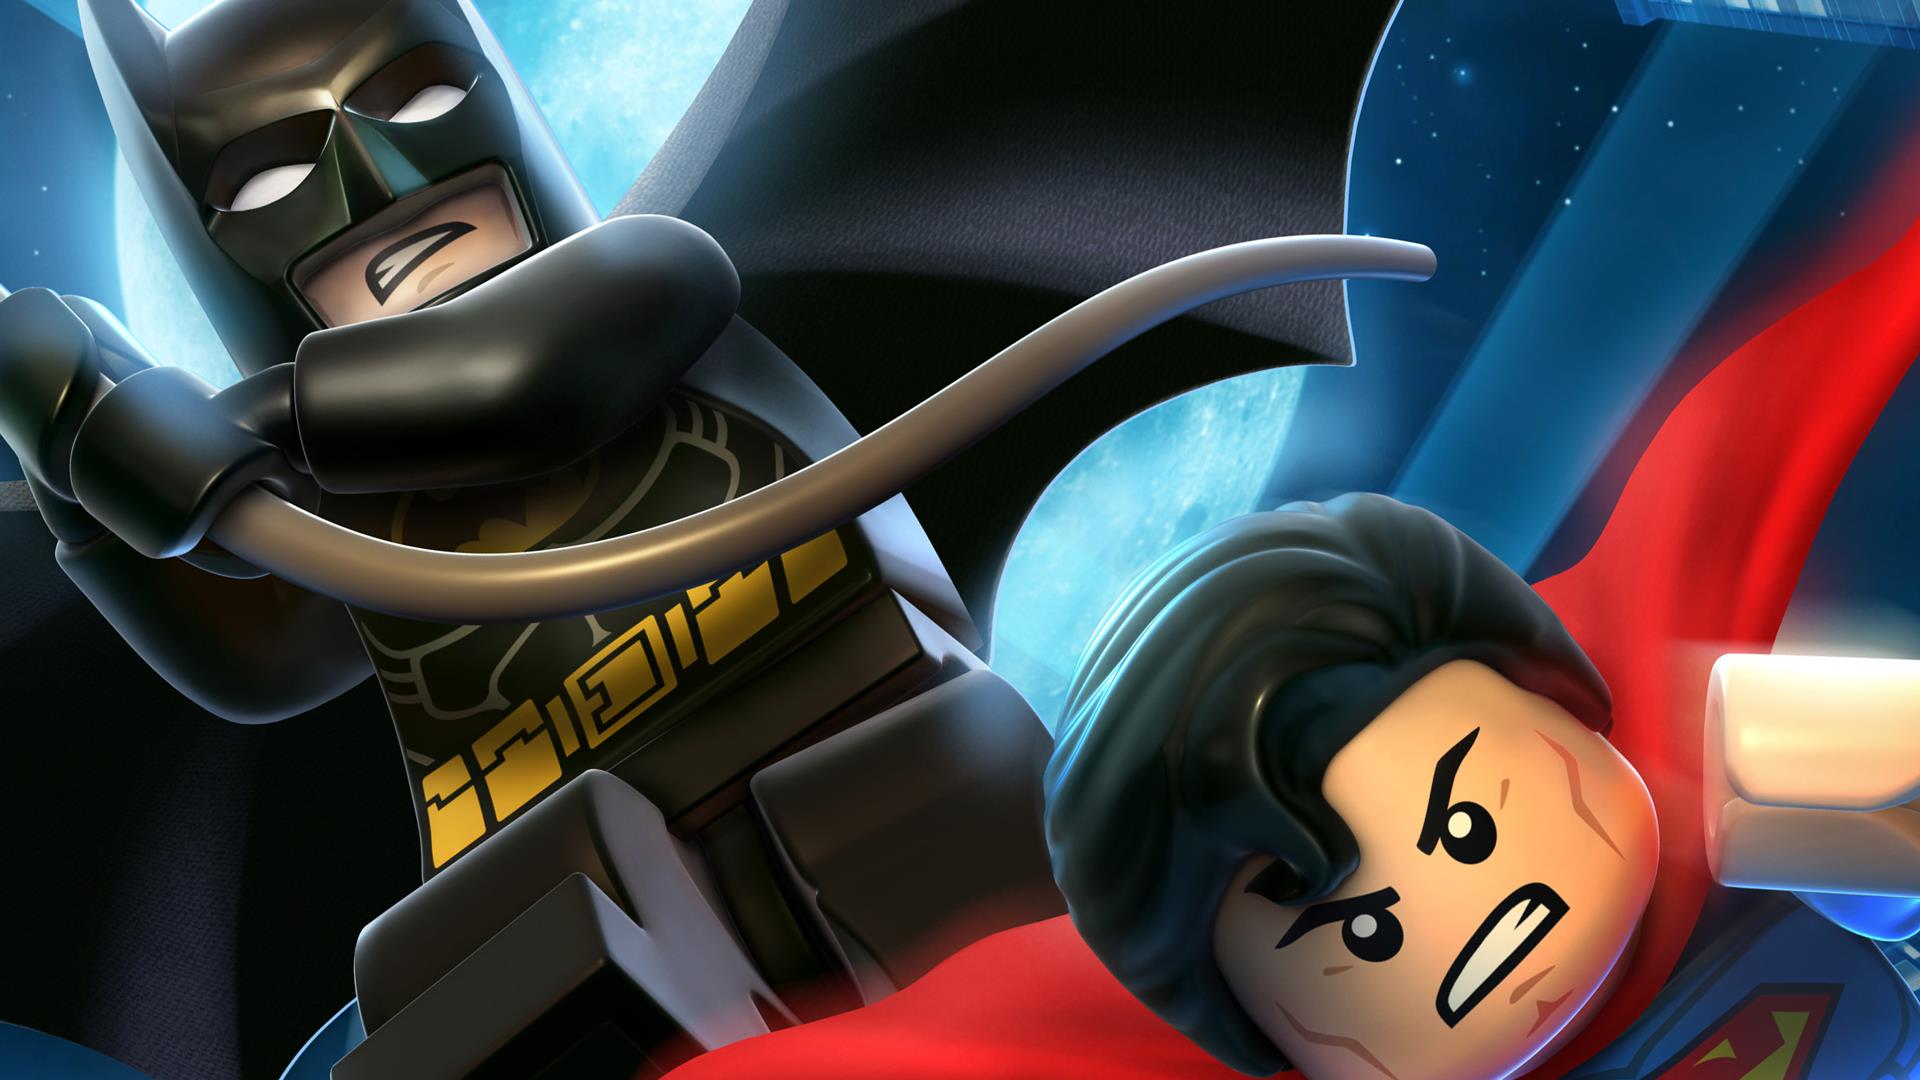 Wallpaper Lego batman and superman